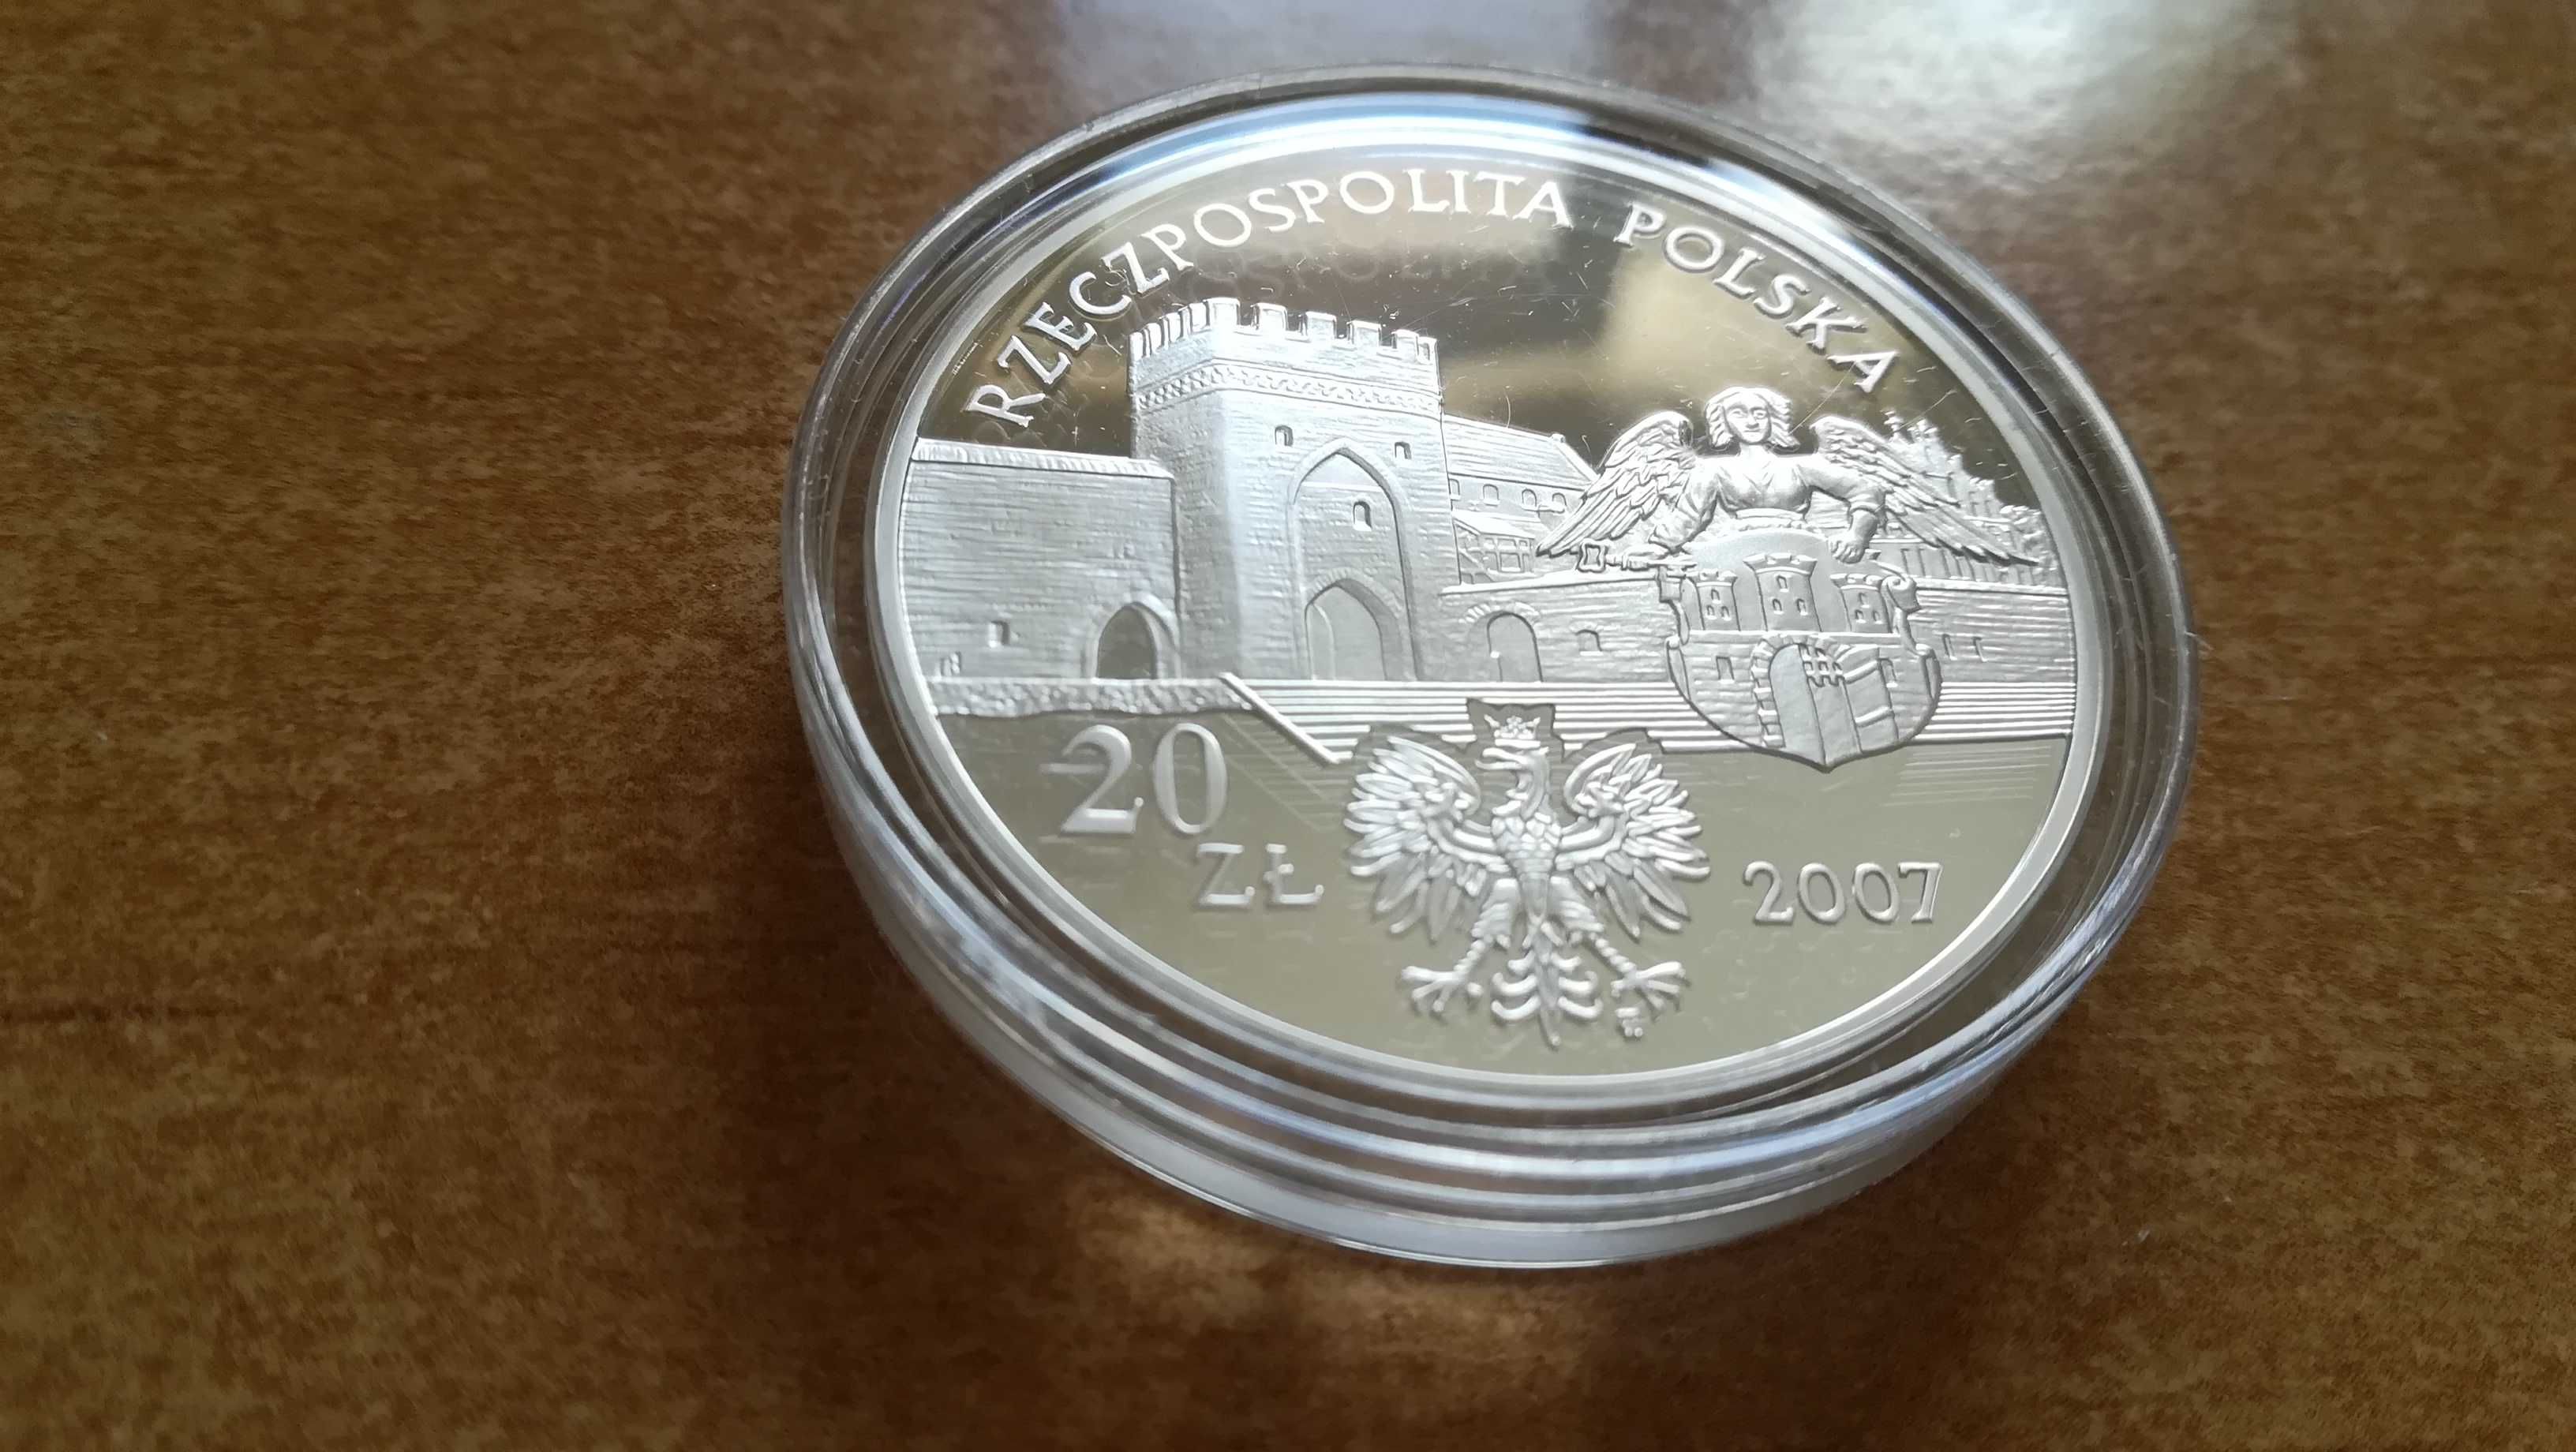 Moneta srebrna 20 zł Miasto Średniowieczne w Toruniu z 2007 r mennicza